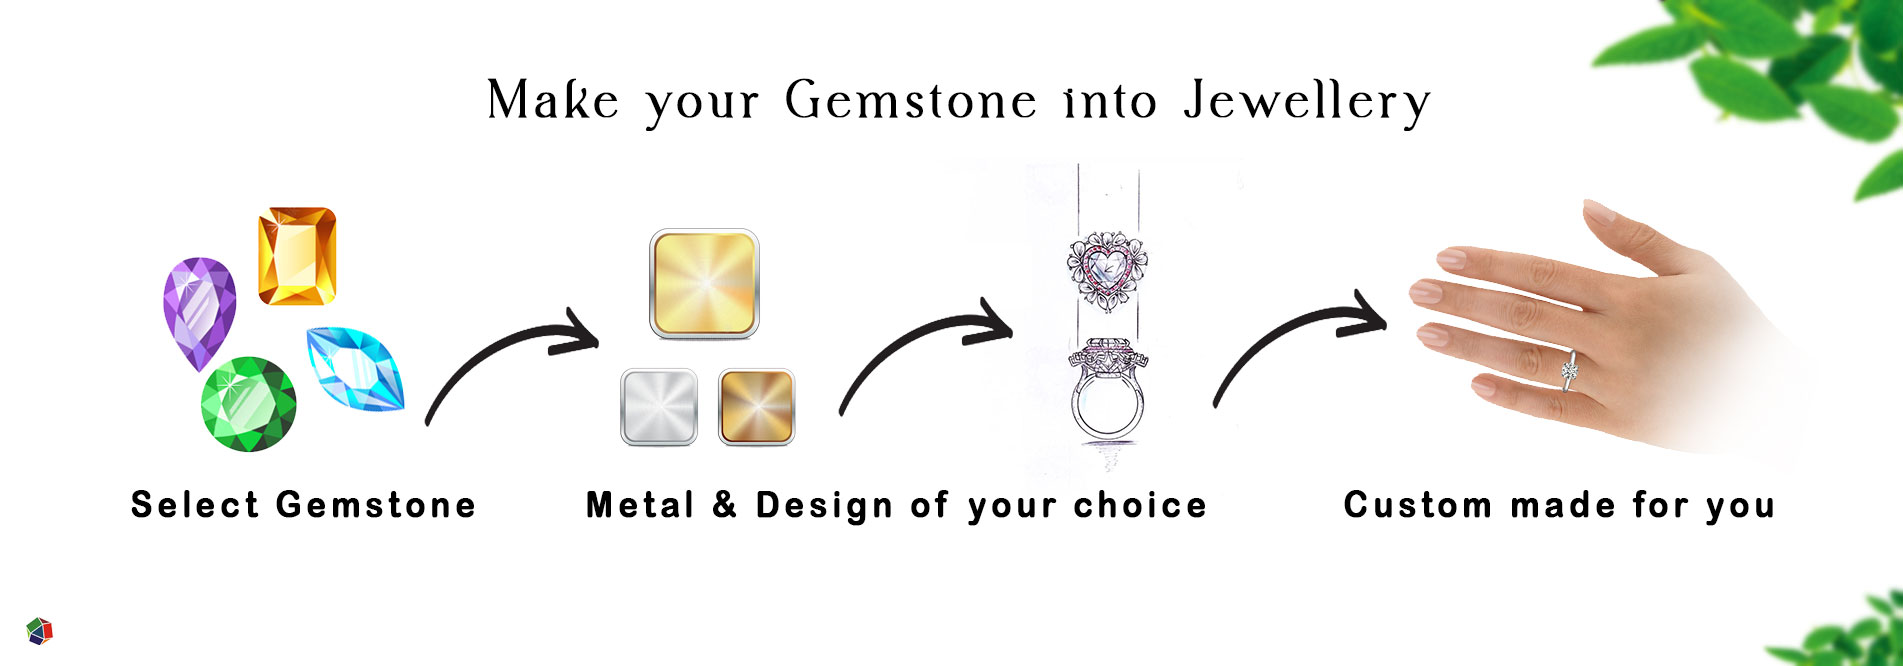 Metal & Design your jewellery